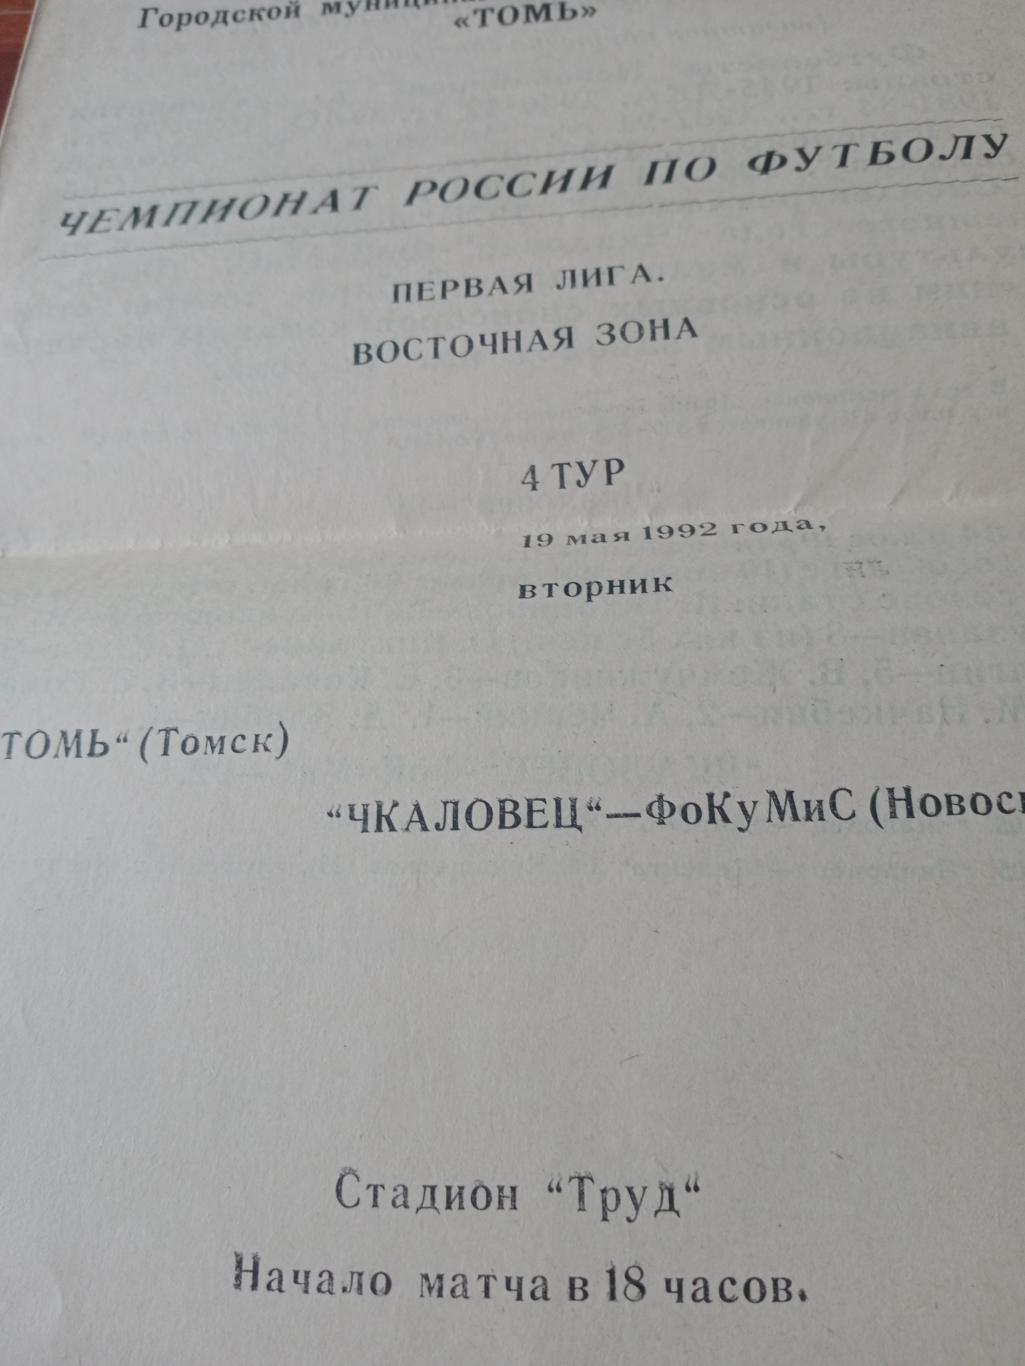 Томь Томск - Чкаловец Новосибирск. 19 мая 1992 год